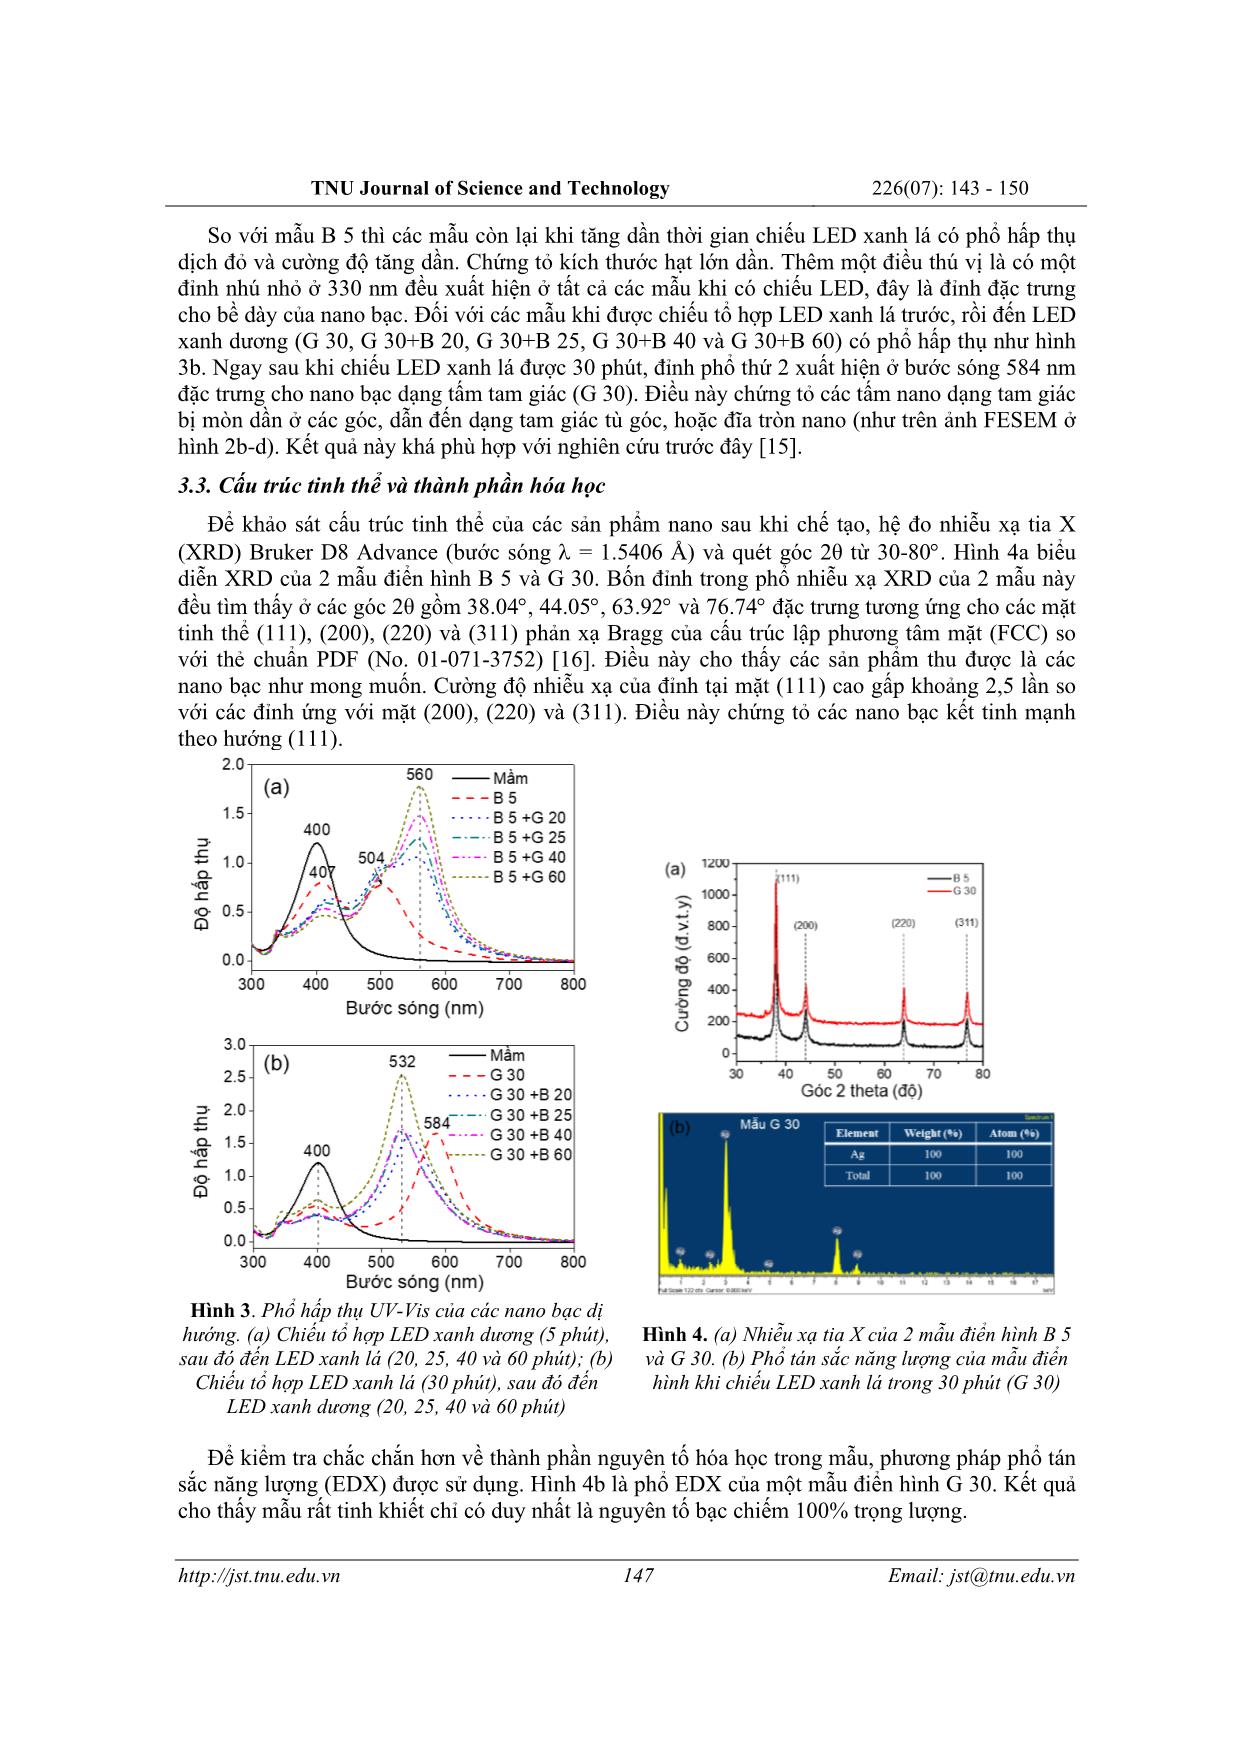 Chế tạo các nano bạc dị hướng bằng kích thích tổ hợp LED xanh lá và LED xanh dương cho ứng dụng phát hiện melamin trang 5